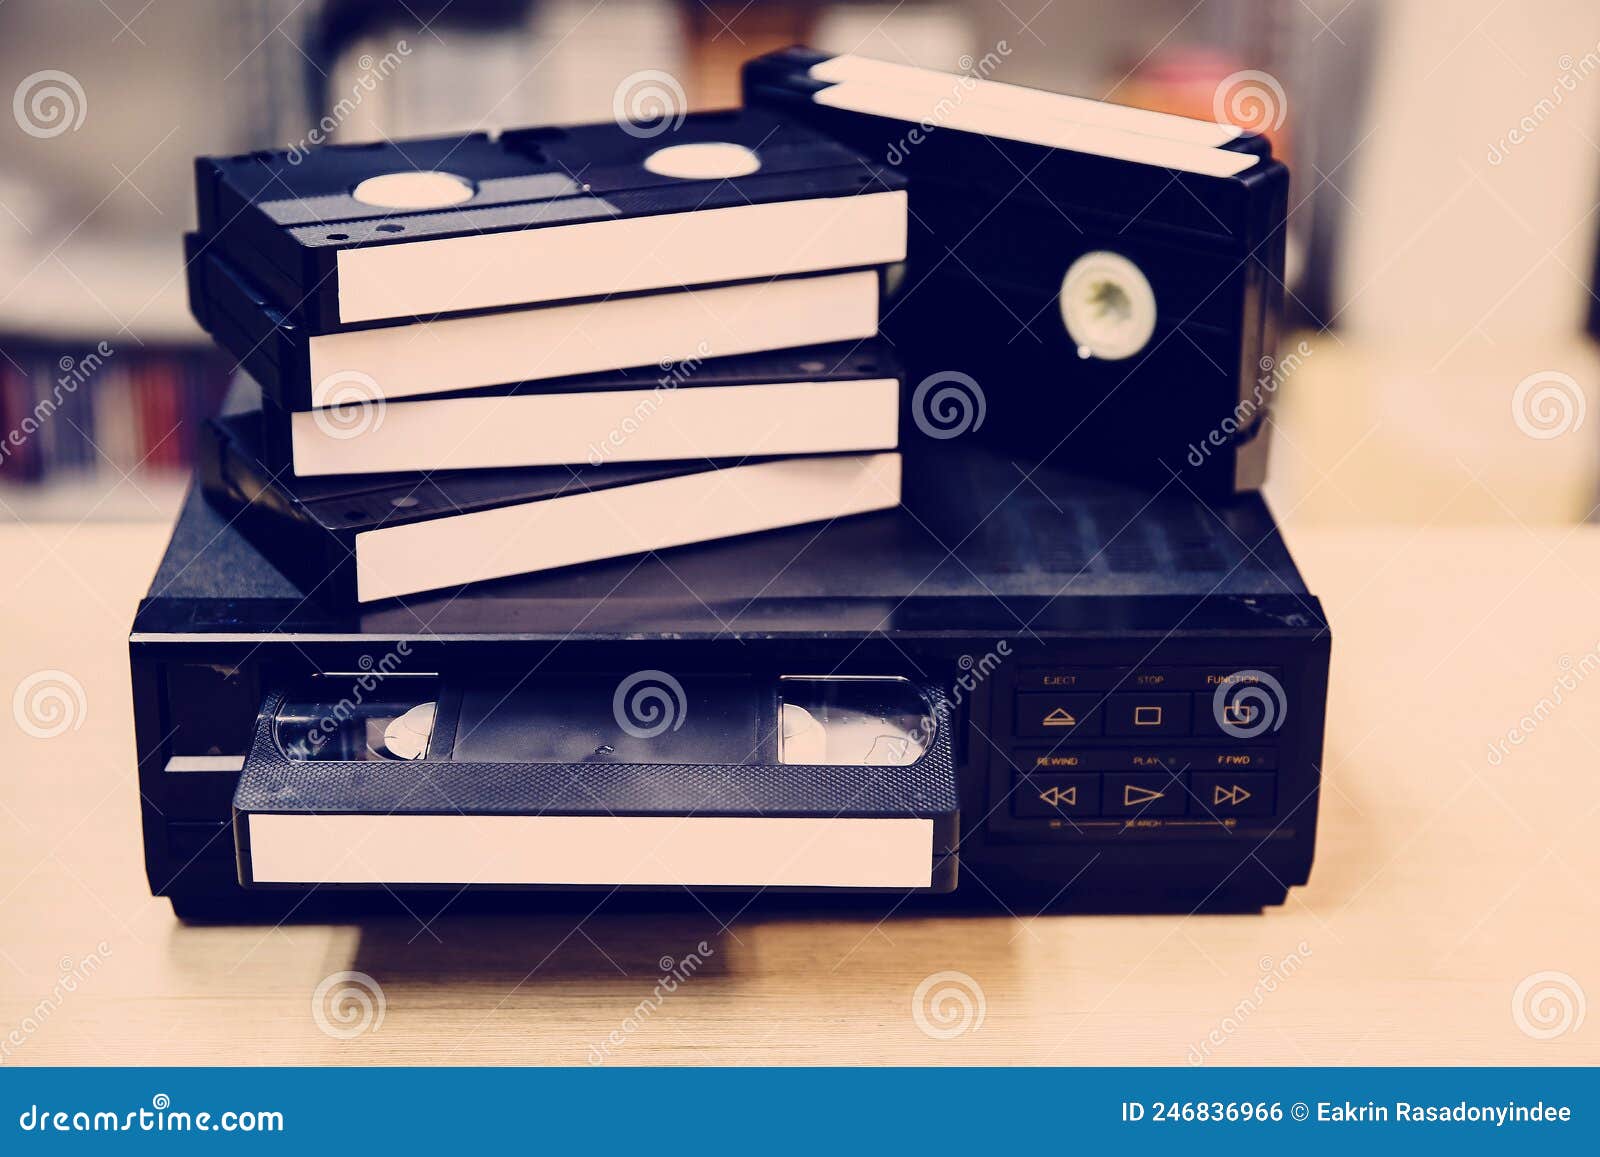 Montón de cinta de video vhs con reproducción de video antiguo